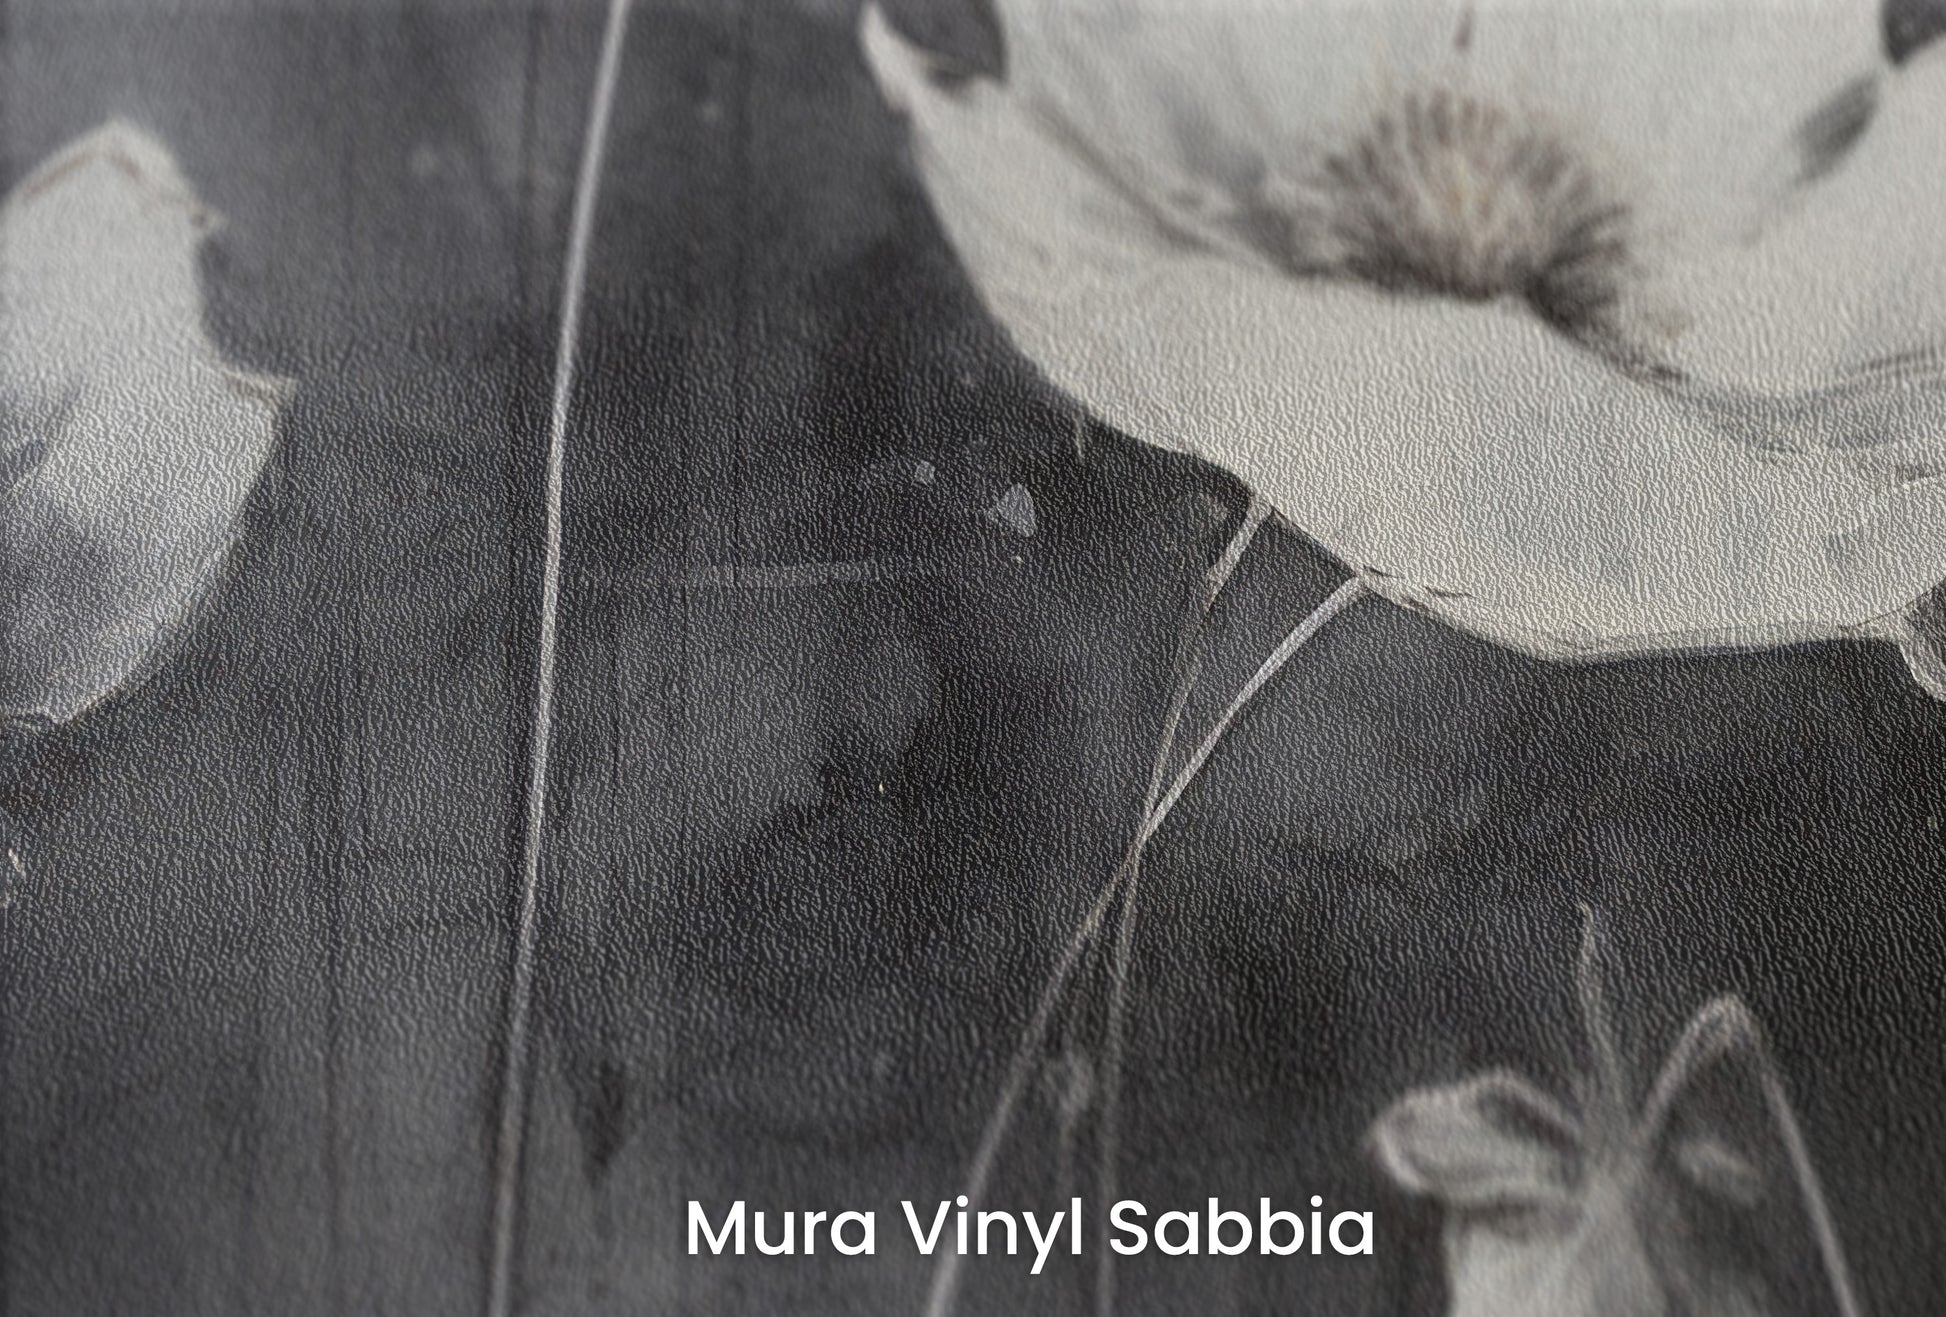 Zbliżenie na artystyczną fototapetę o nazwie GOTHIC GARDEN na podłożu Mura Vinyl Sabbia struktura grubego ziarna piasku.